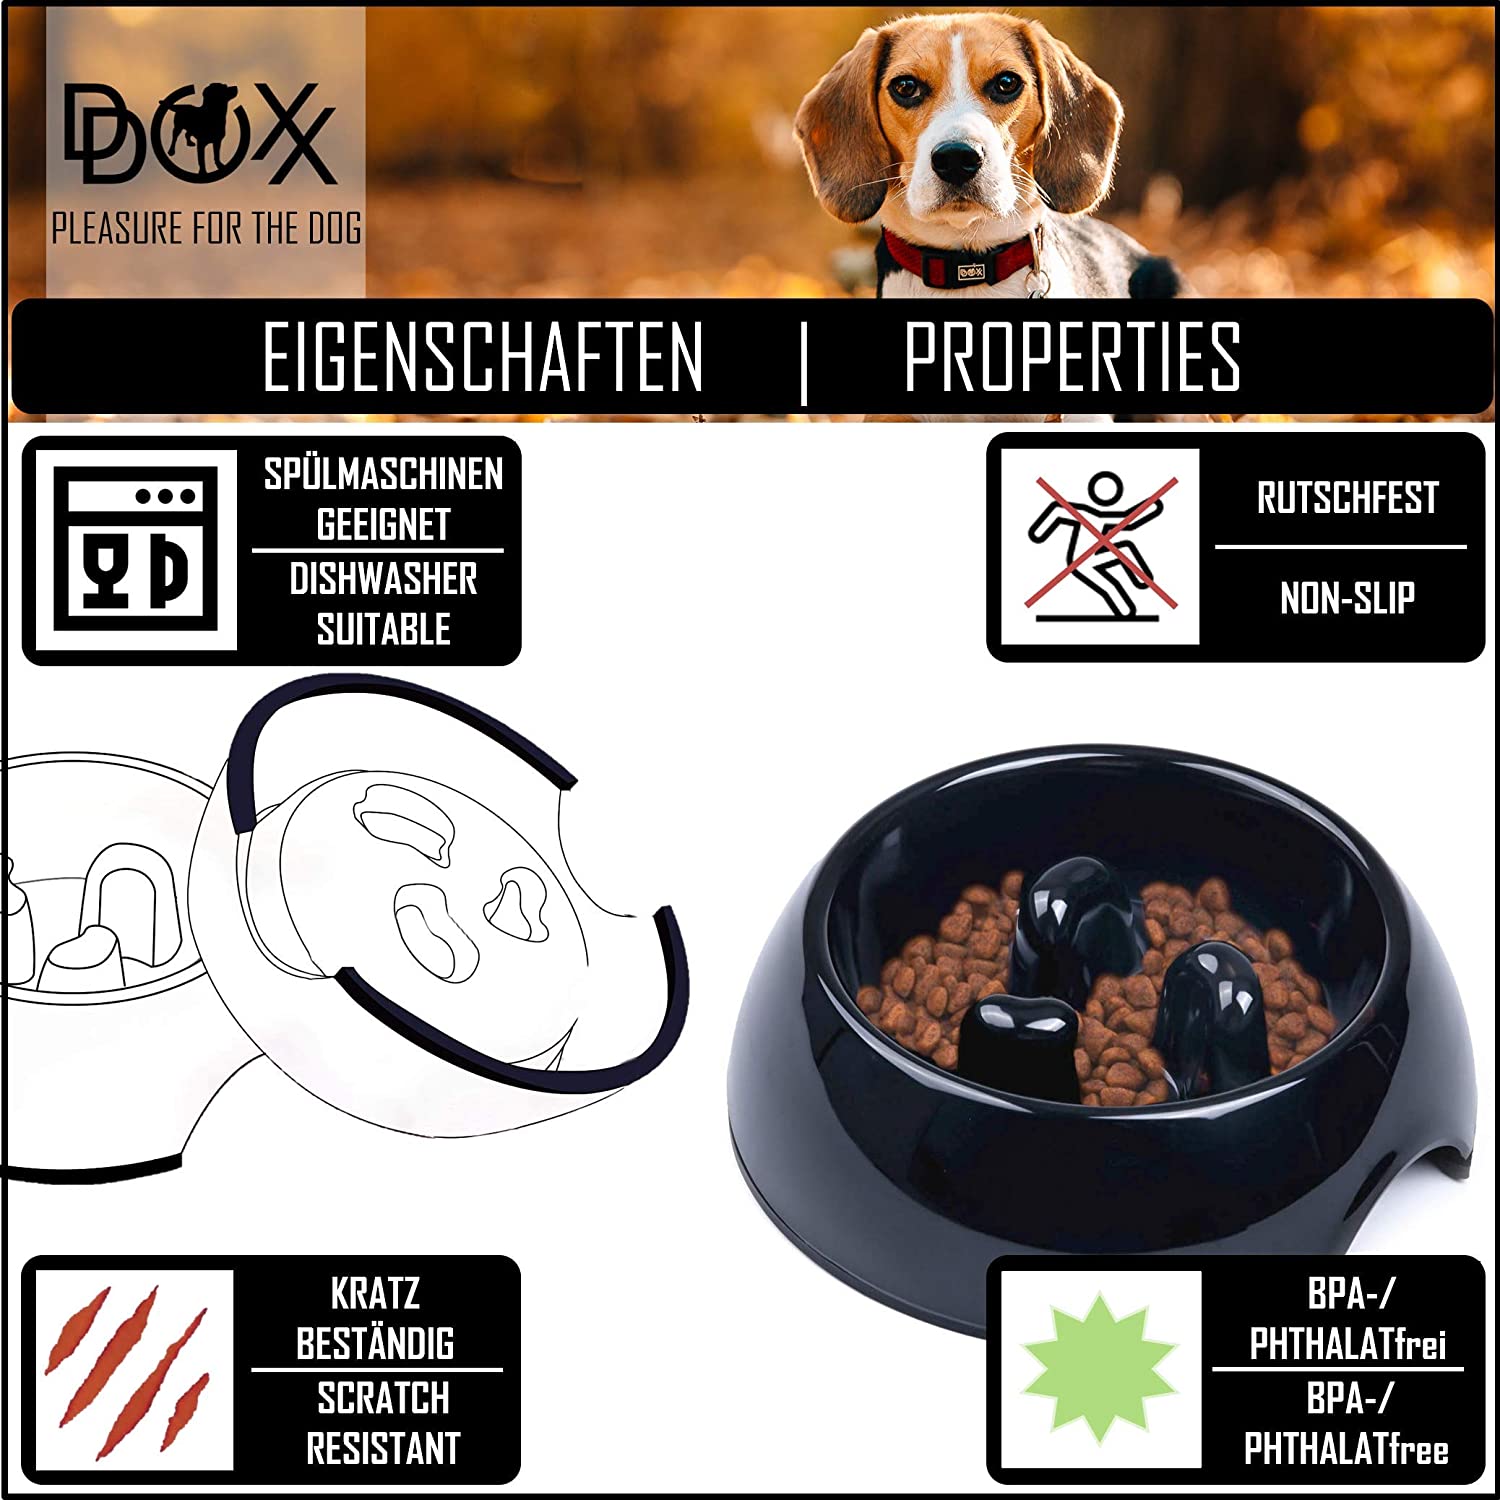  DDOXX Comedero Antivoracidad Perro, Antideslizante Tamaños | para Perros Pequeño, Mediano y Grande | Bol Accesorios Melamina Gato Cachorro | Negro, 300 ml 